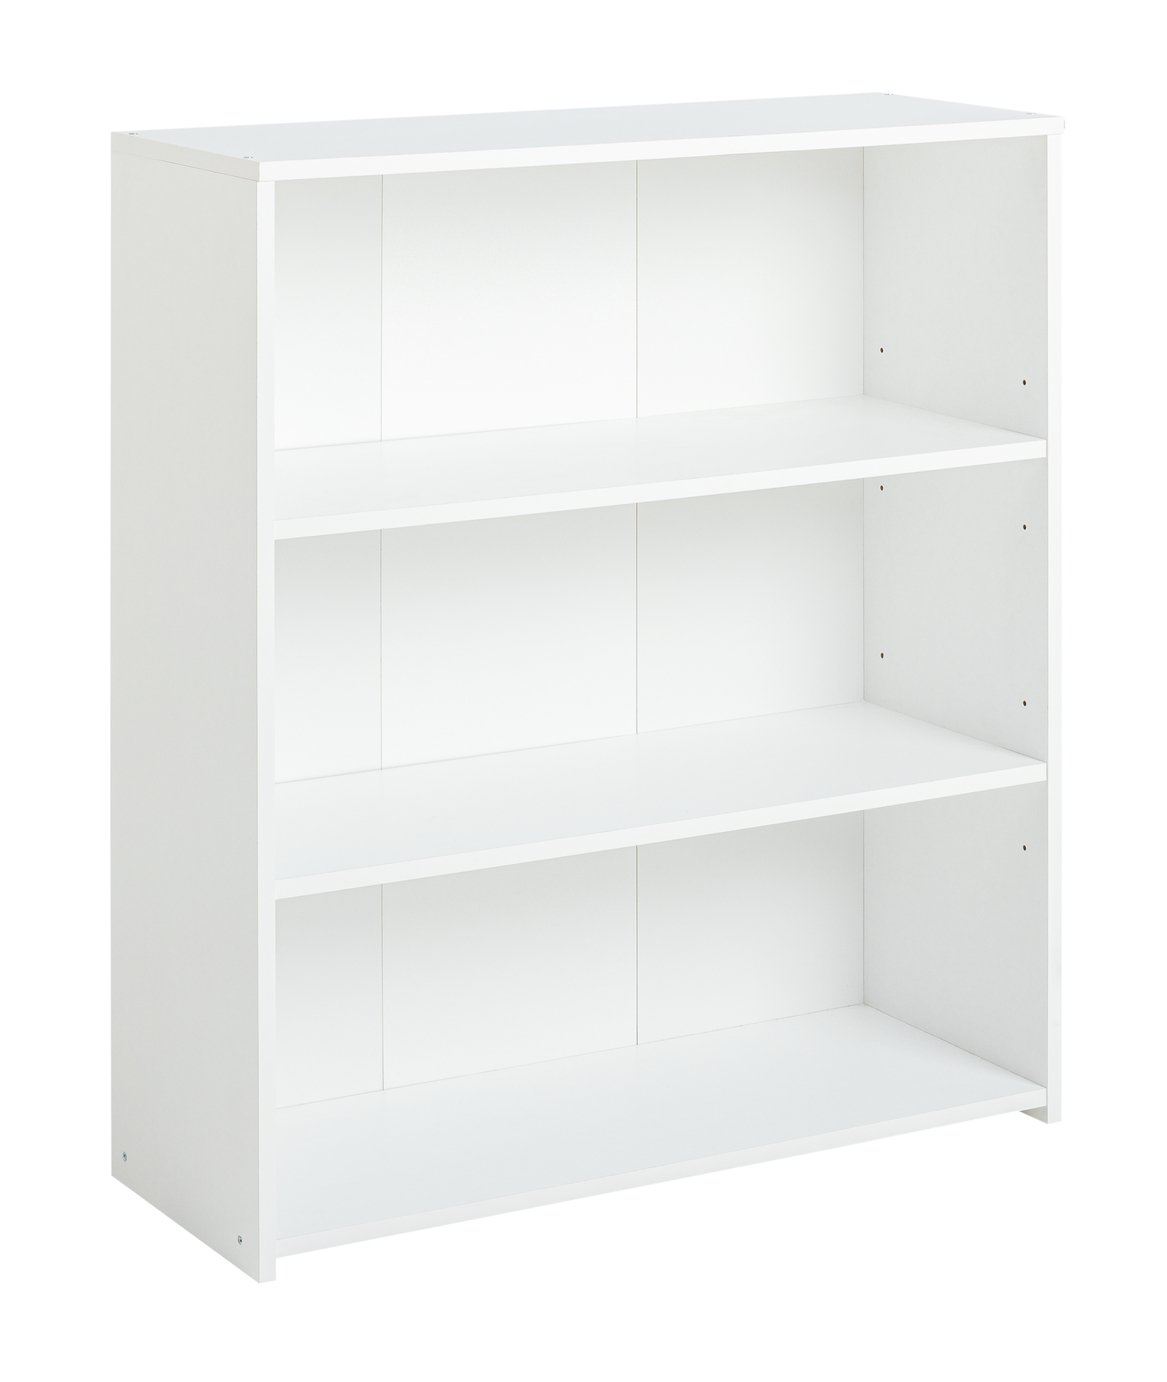 Argos Home Malibu Short Wood Effect Bookcase - White